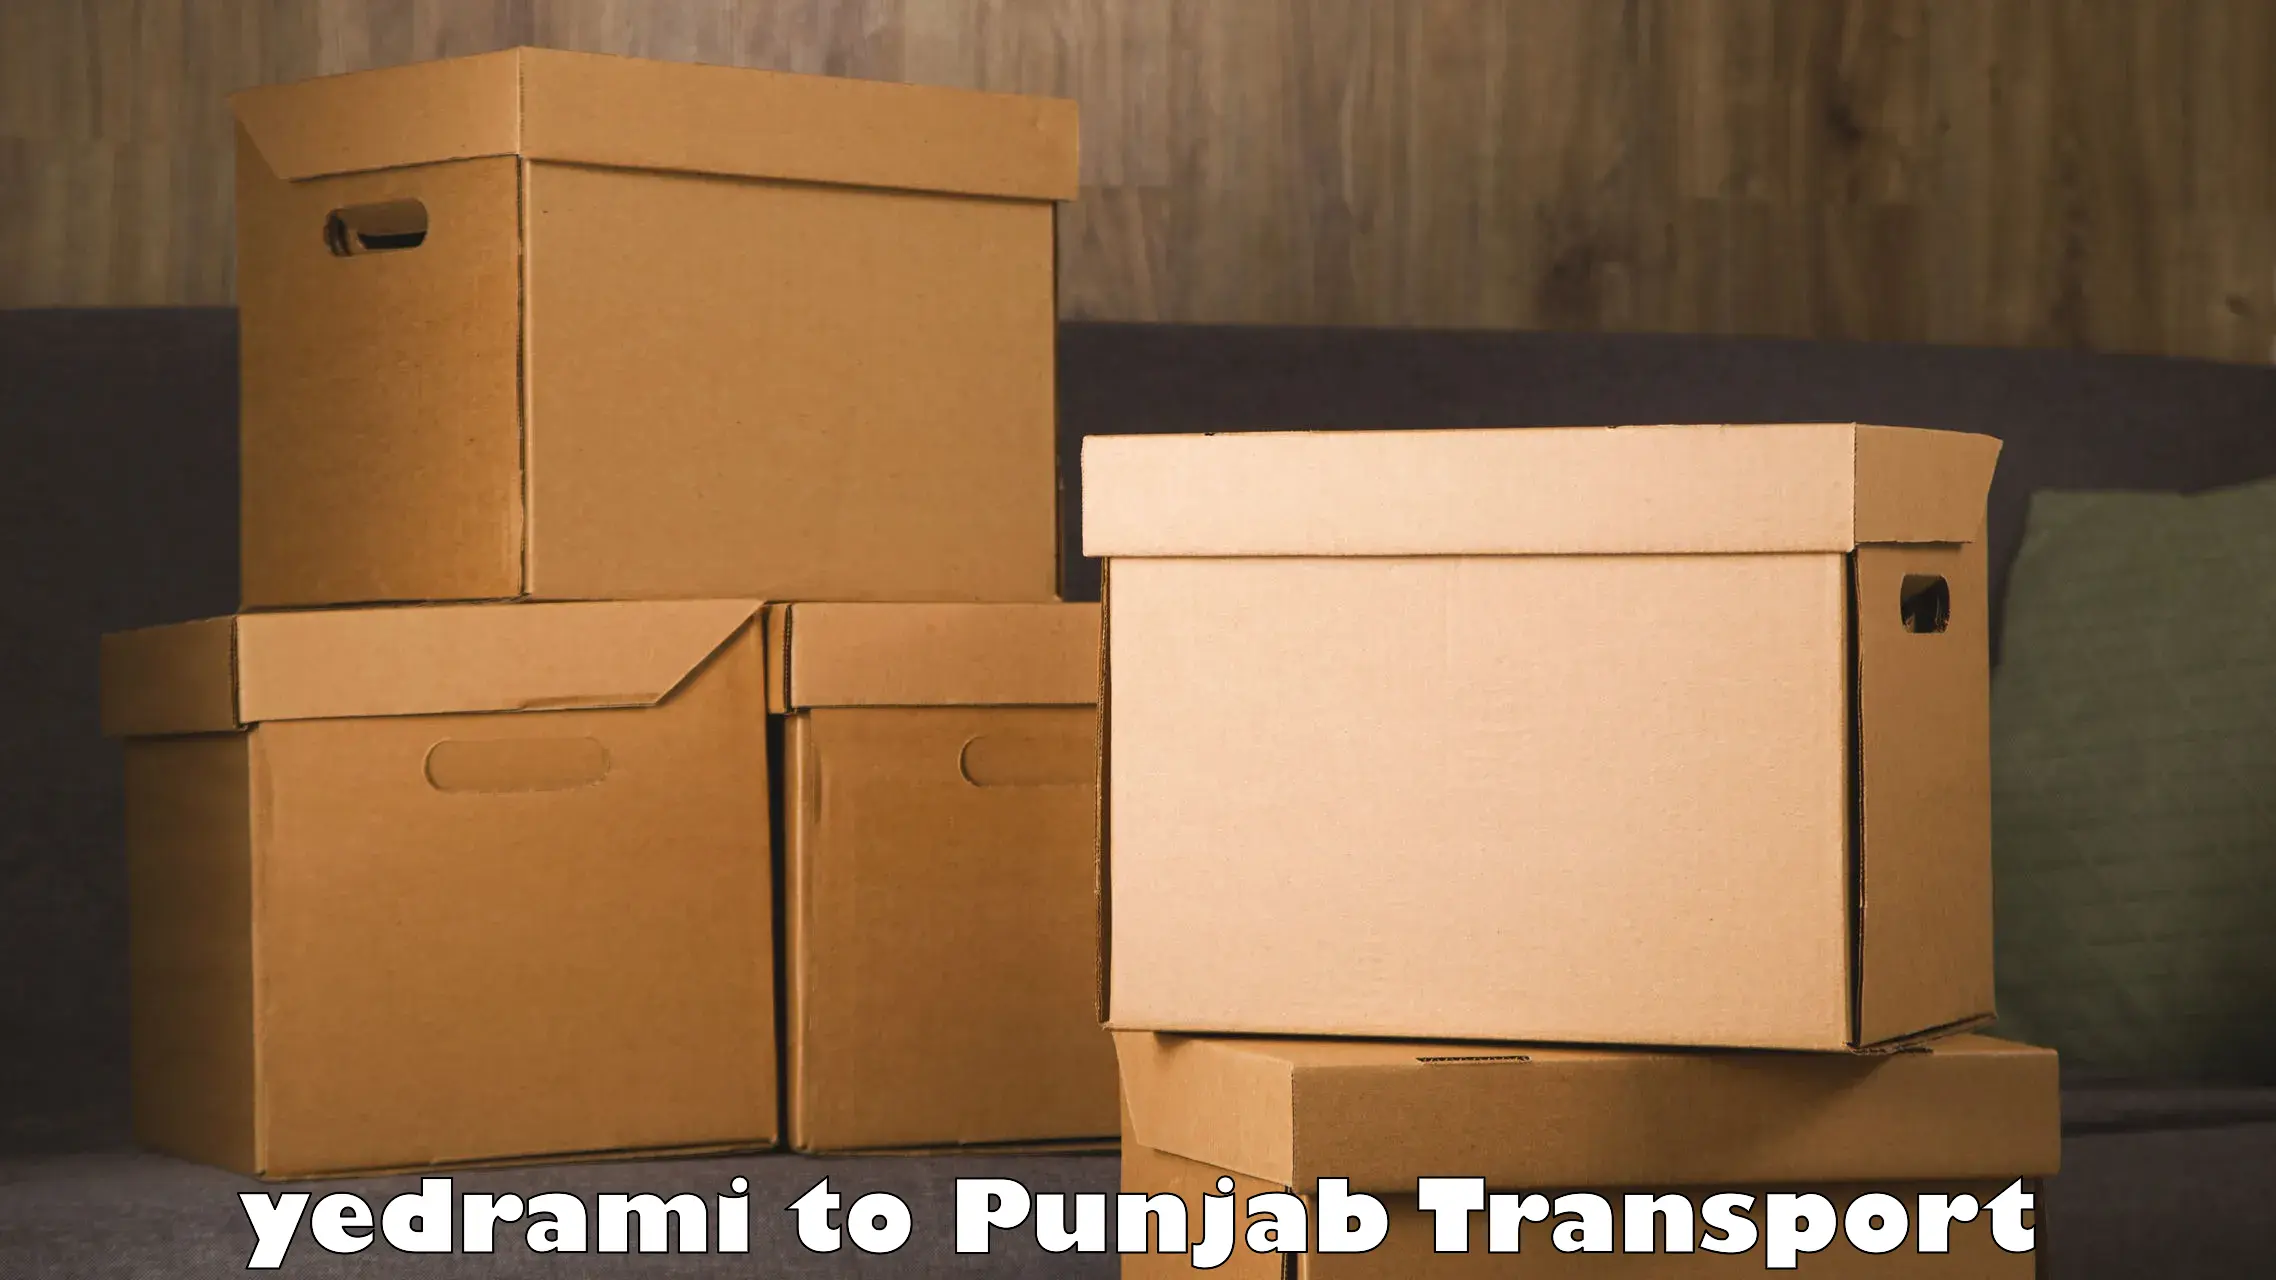 Two wheeler parcel service yedrami to Sangrur